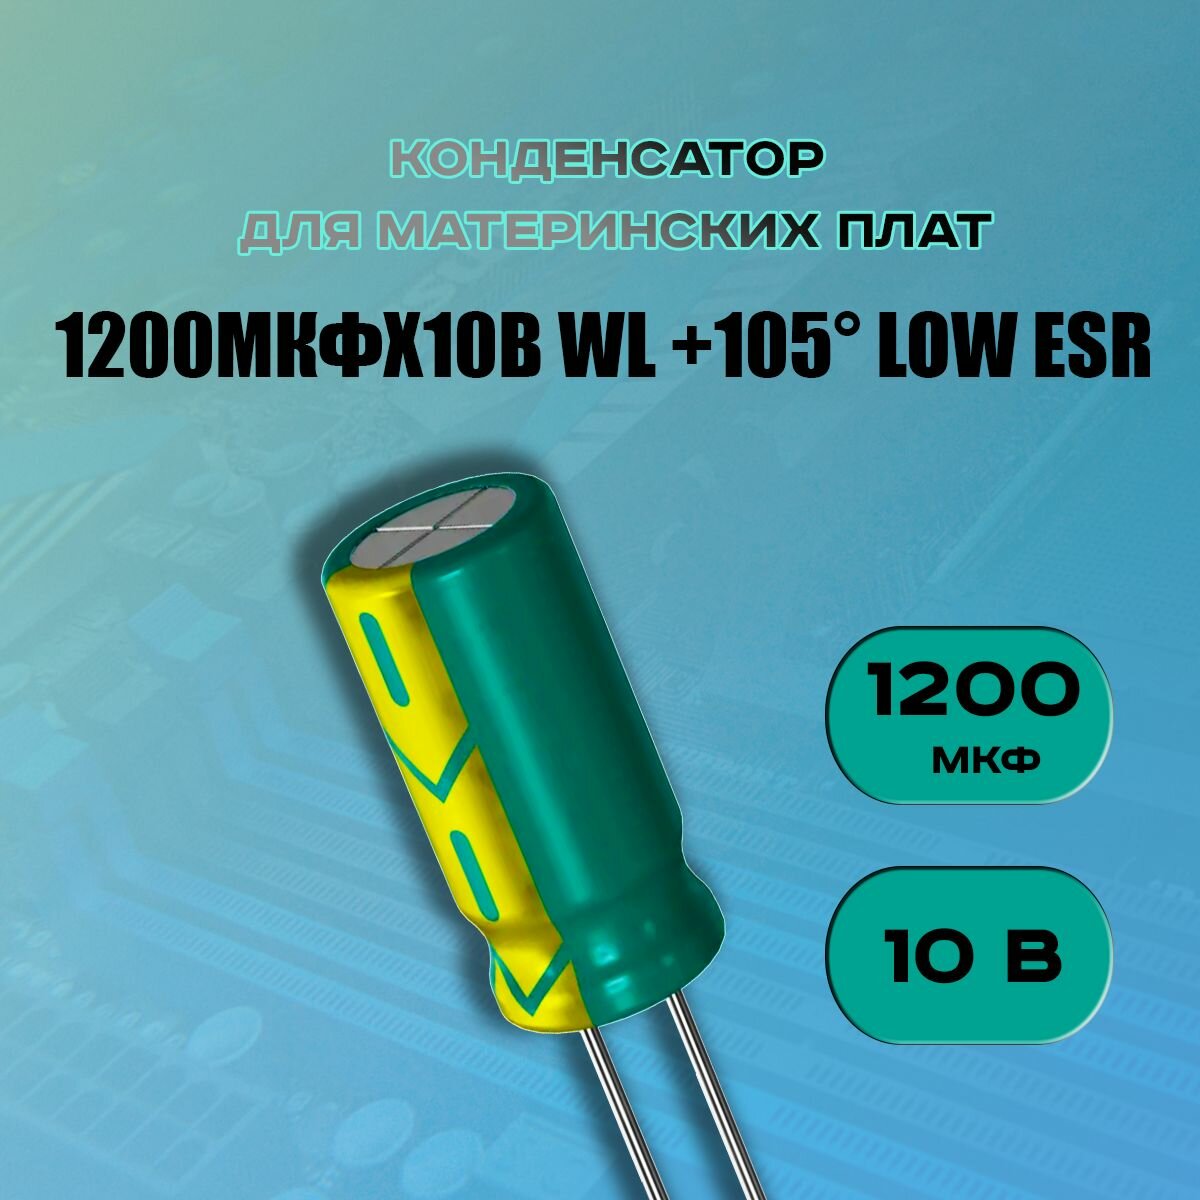 Конденсатор для материнской платы 1200 микрофарат 10 Вольт (1200uf 10V WL +105 LOW ESR) - 1 шт.